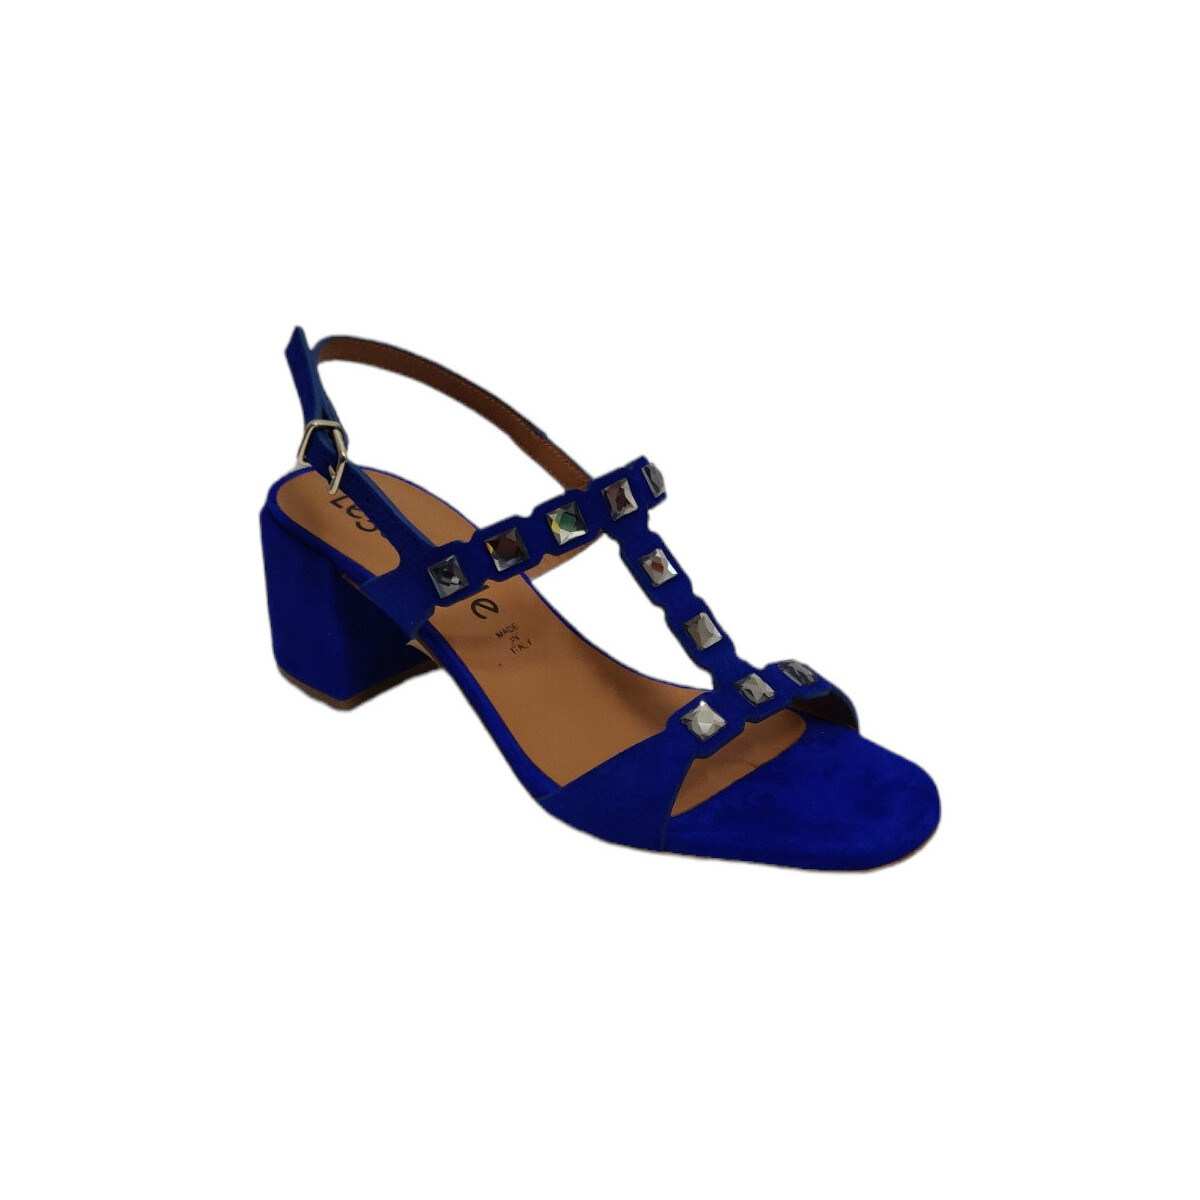 Chaussures Femme Sandales et Nu-pieds Legazzelle 630-BLU Bleu